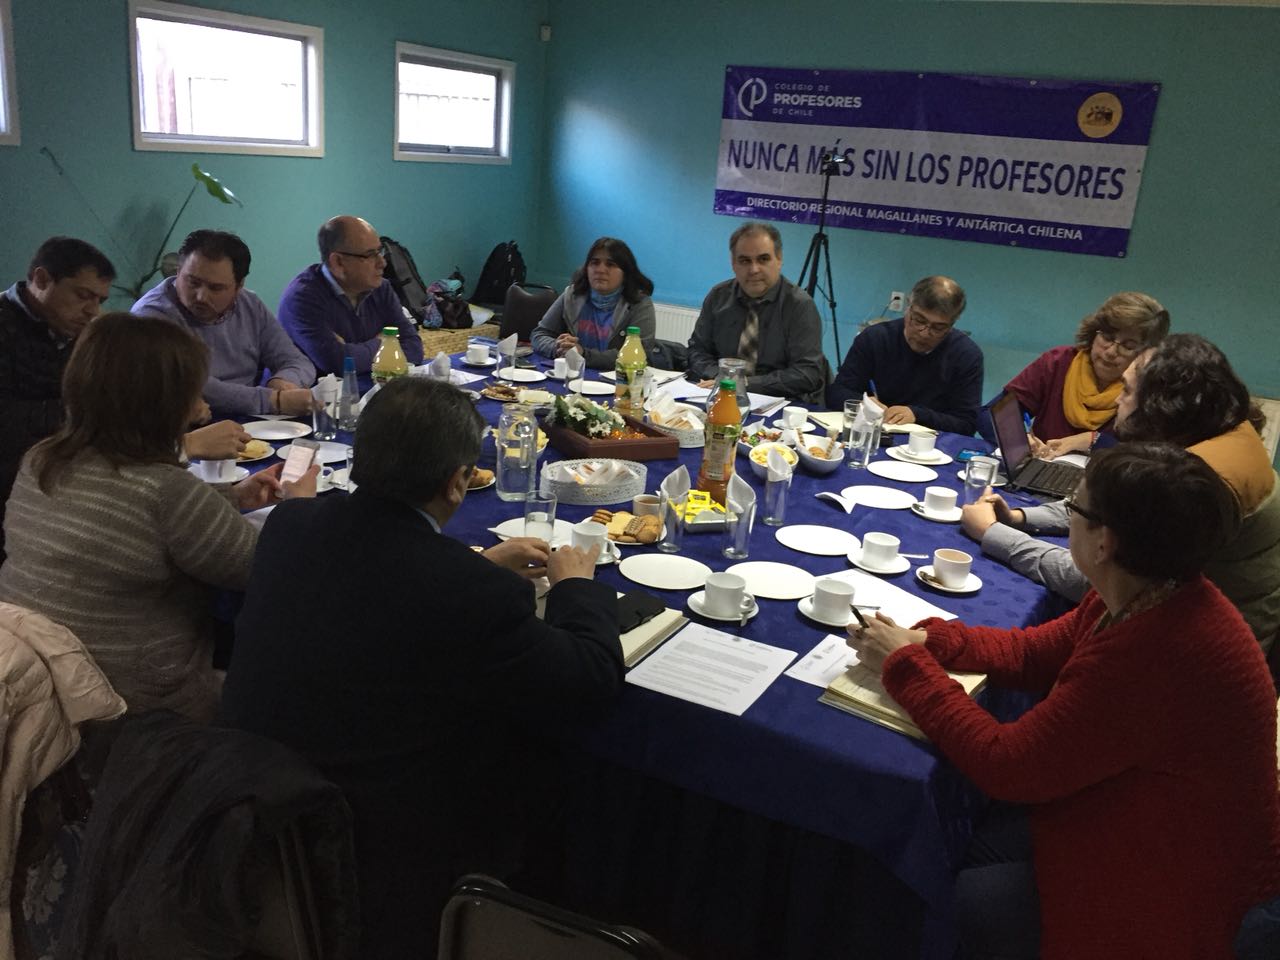 Reunión entre el Colegio de Profesores y autoridades terminó con propuestas, pero sin soluciones: paro de brazos caídos se mantiene en Punta Arenas